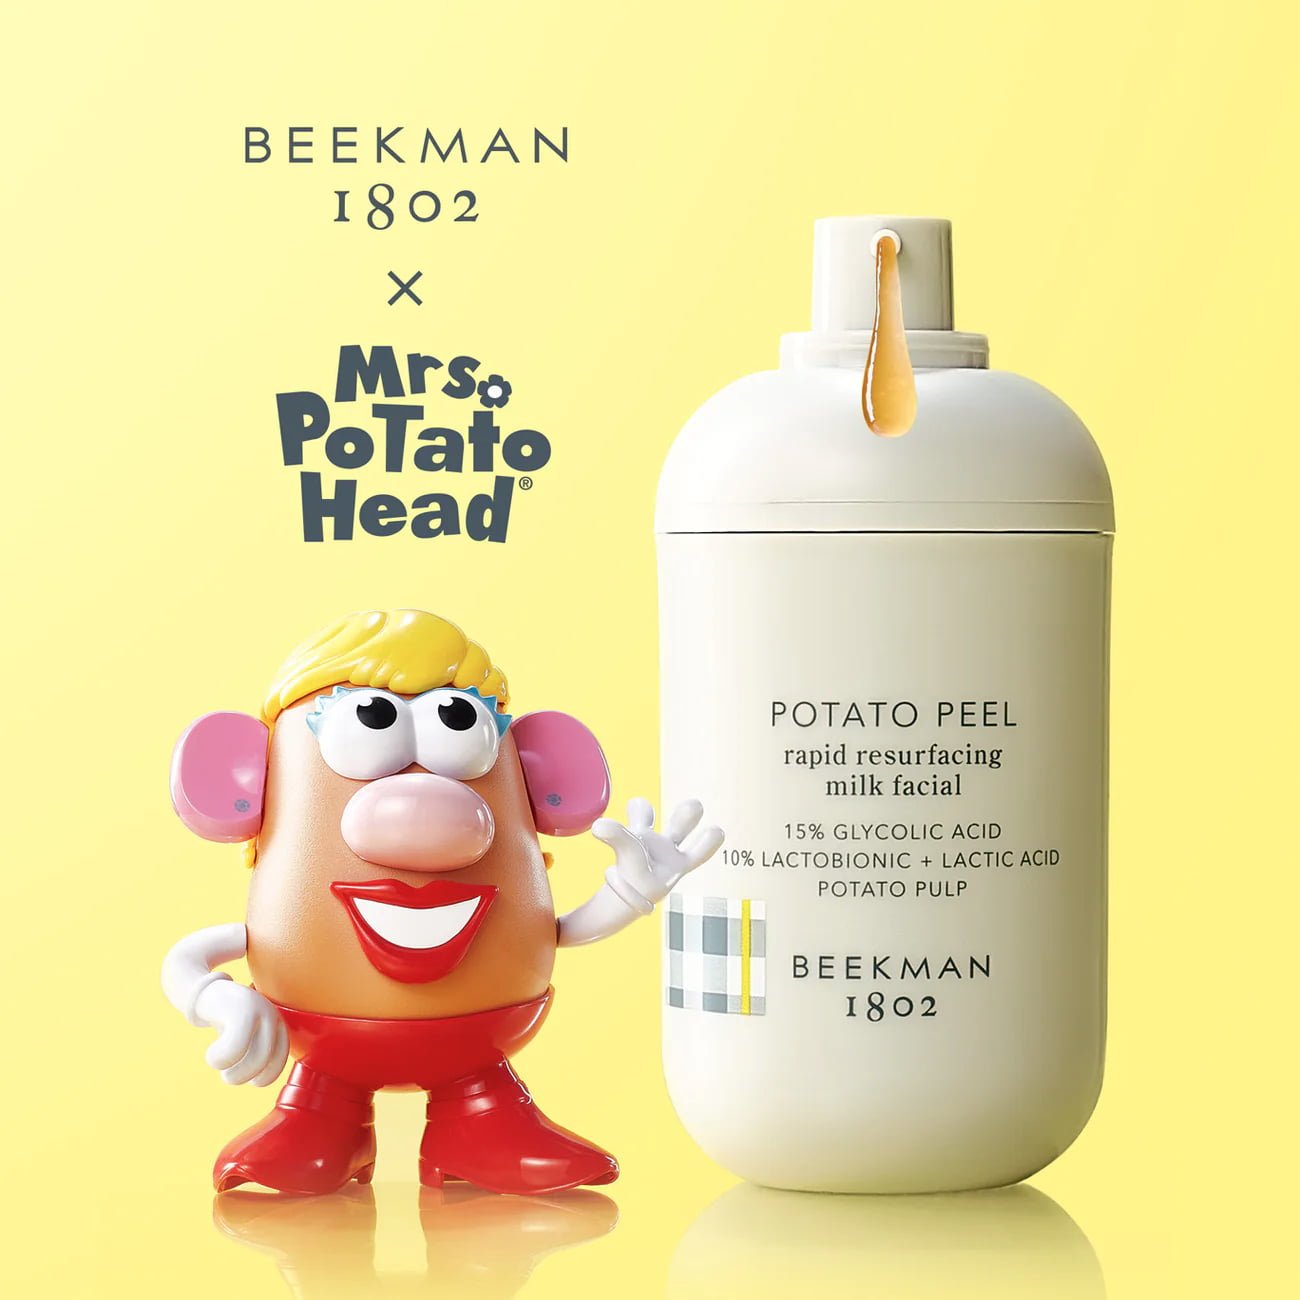 Beekman 1802 Potato Peel Rapid Resurfacing Milk Facial